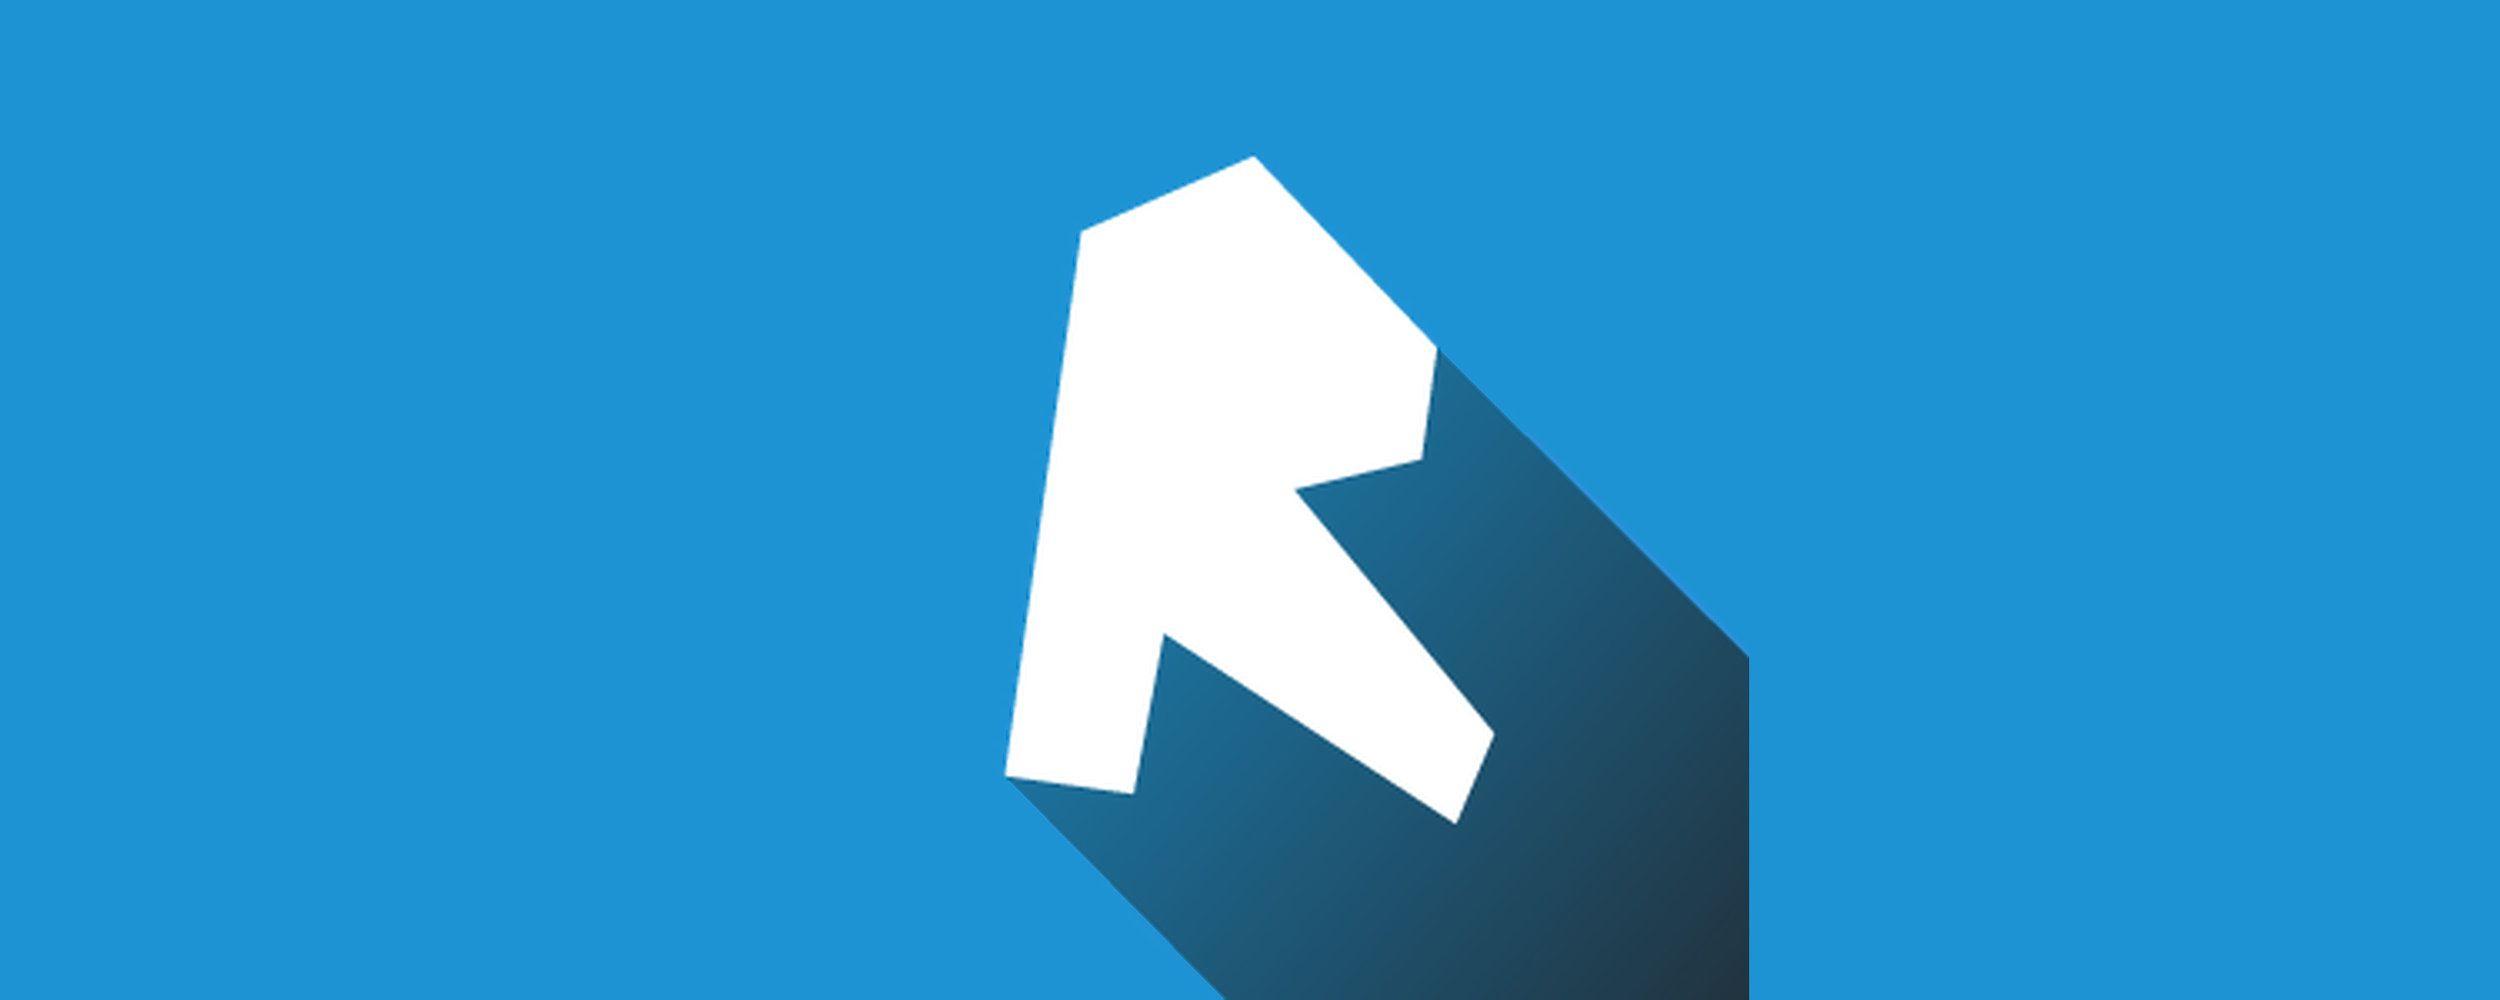 Revit Logo - Revit Modelling